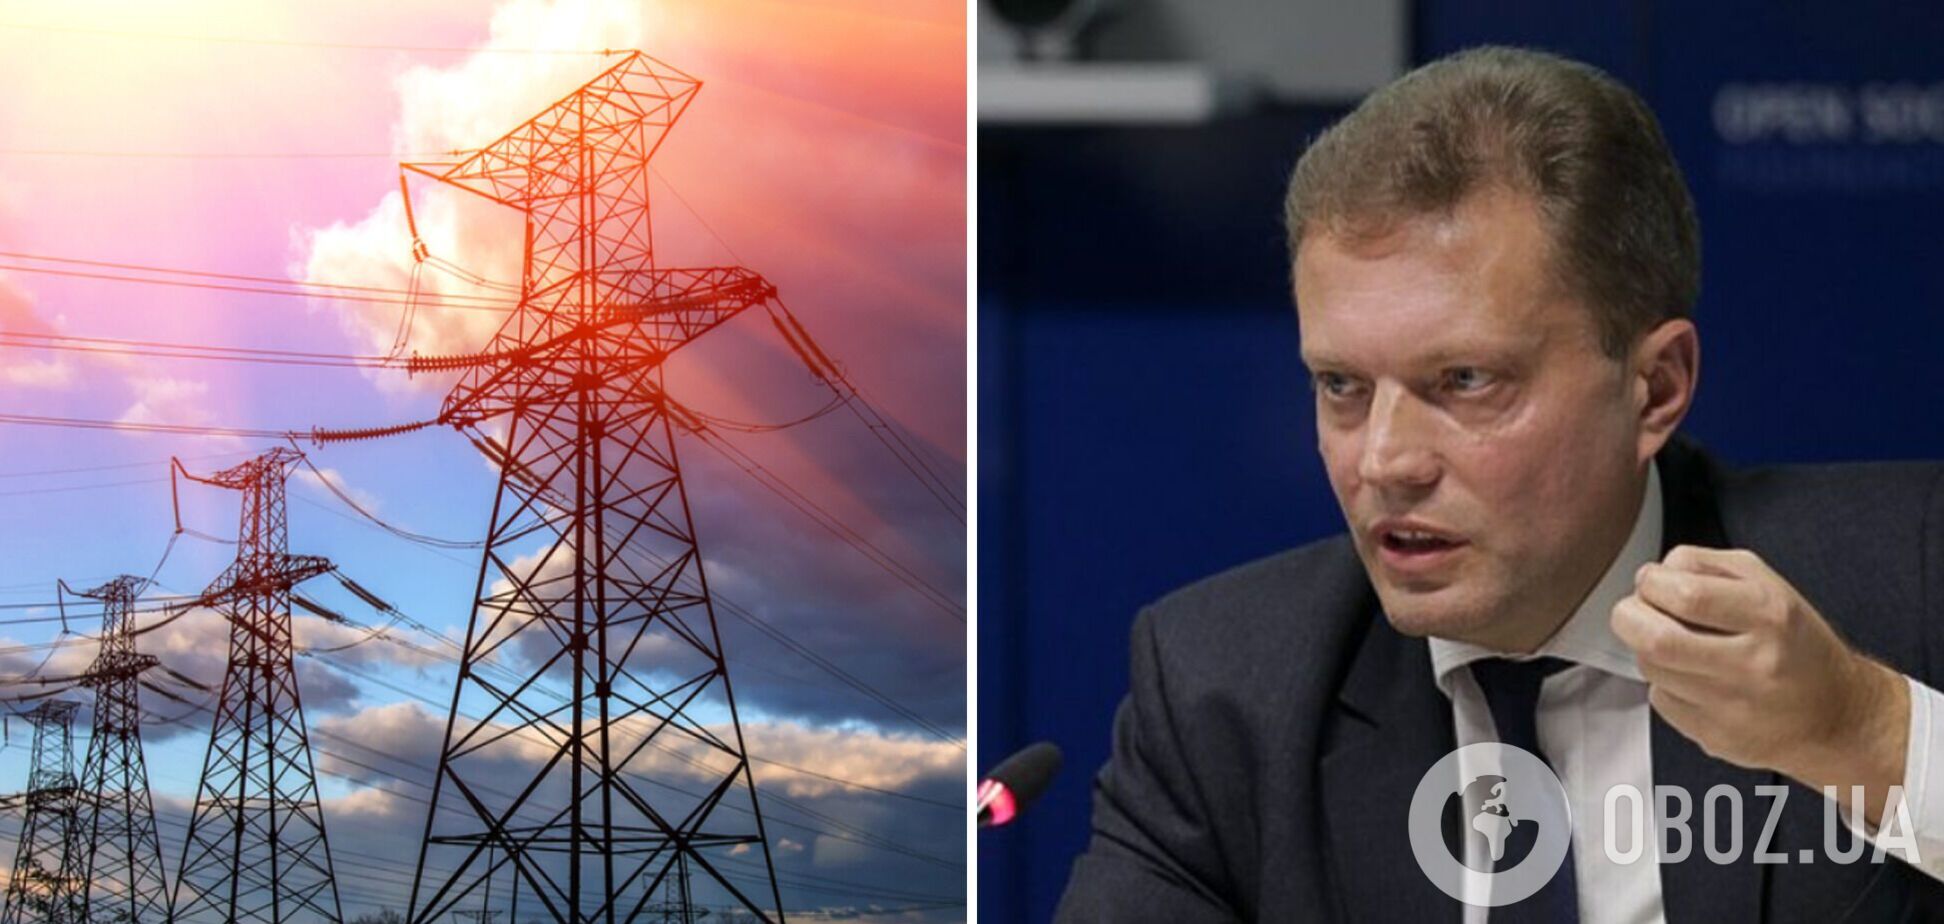 Из-за прайс-кепов на рынке электроэнергии Украина недостаточно импортирует и переплачивает за аварийную помощь, – Омельченко